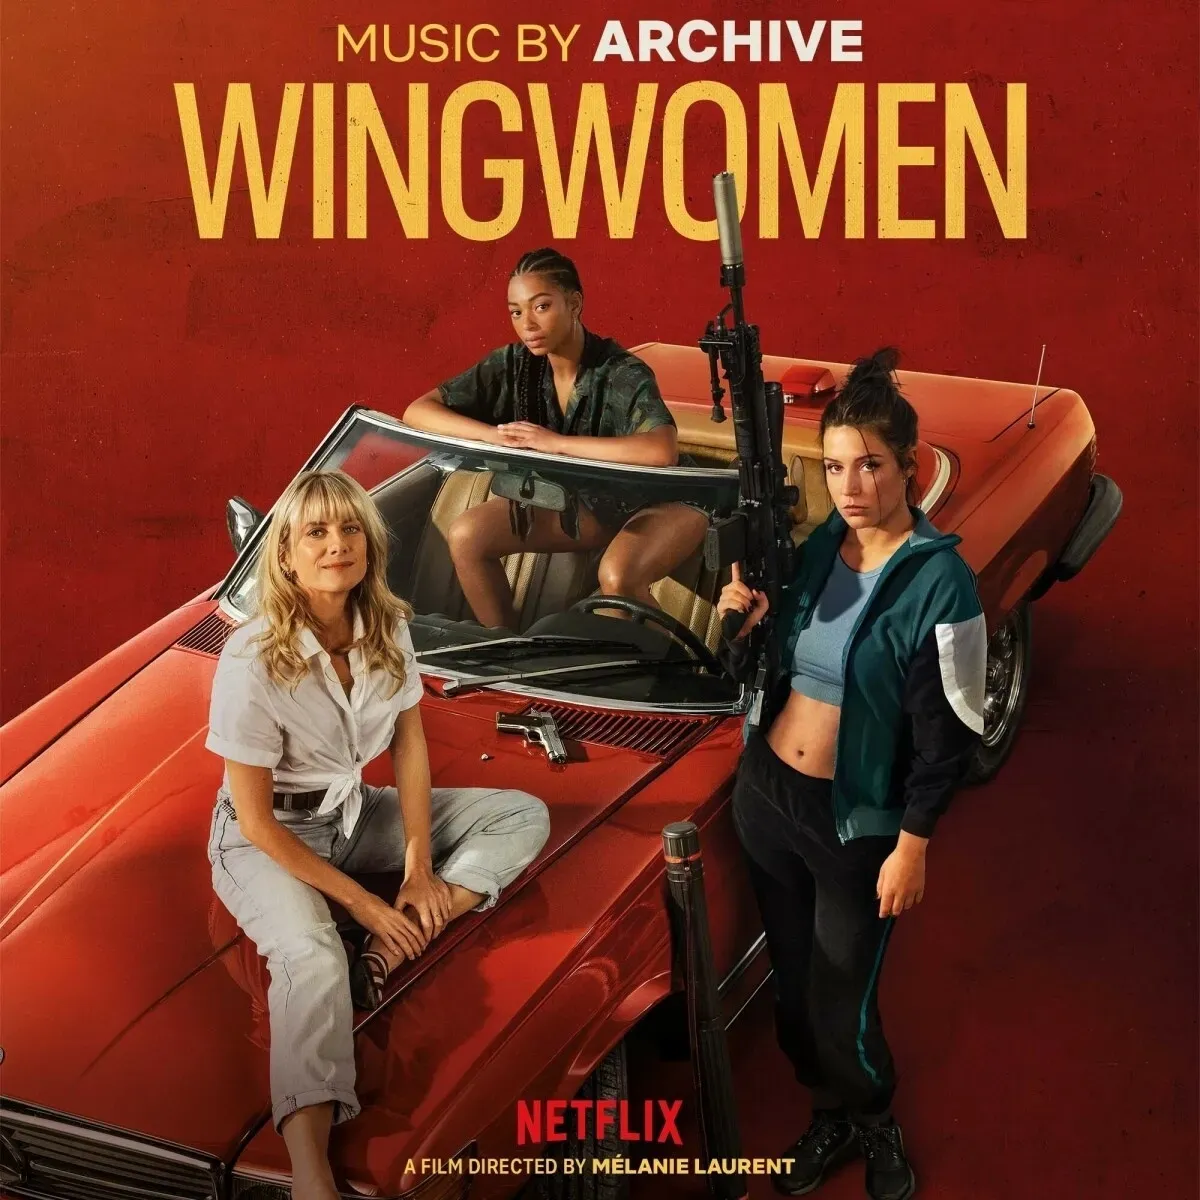 Wingwomen (Original Netflix Film Soundtrack) (Vinyl) - Archive. (LP)